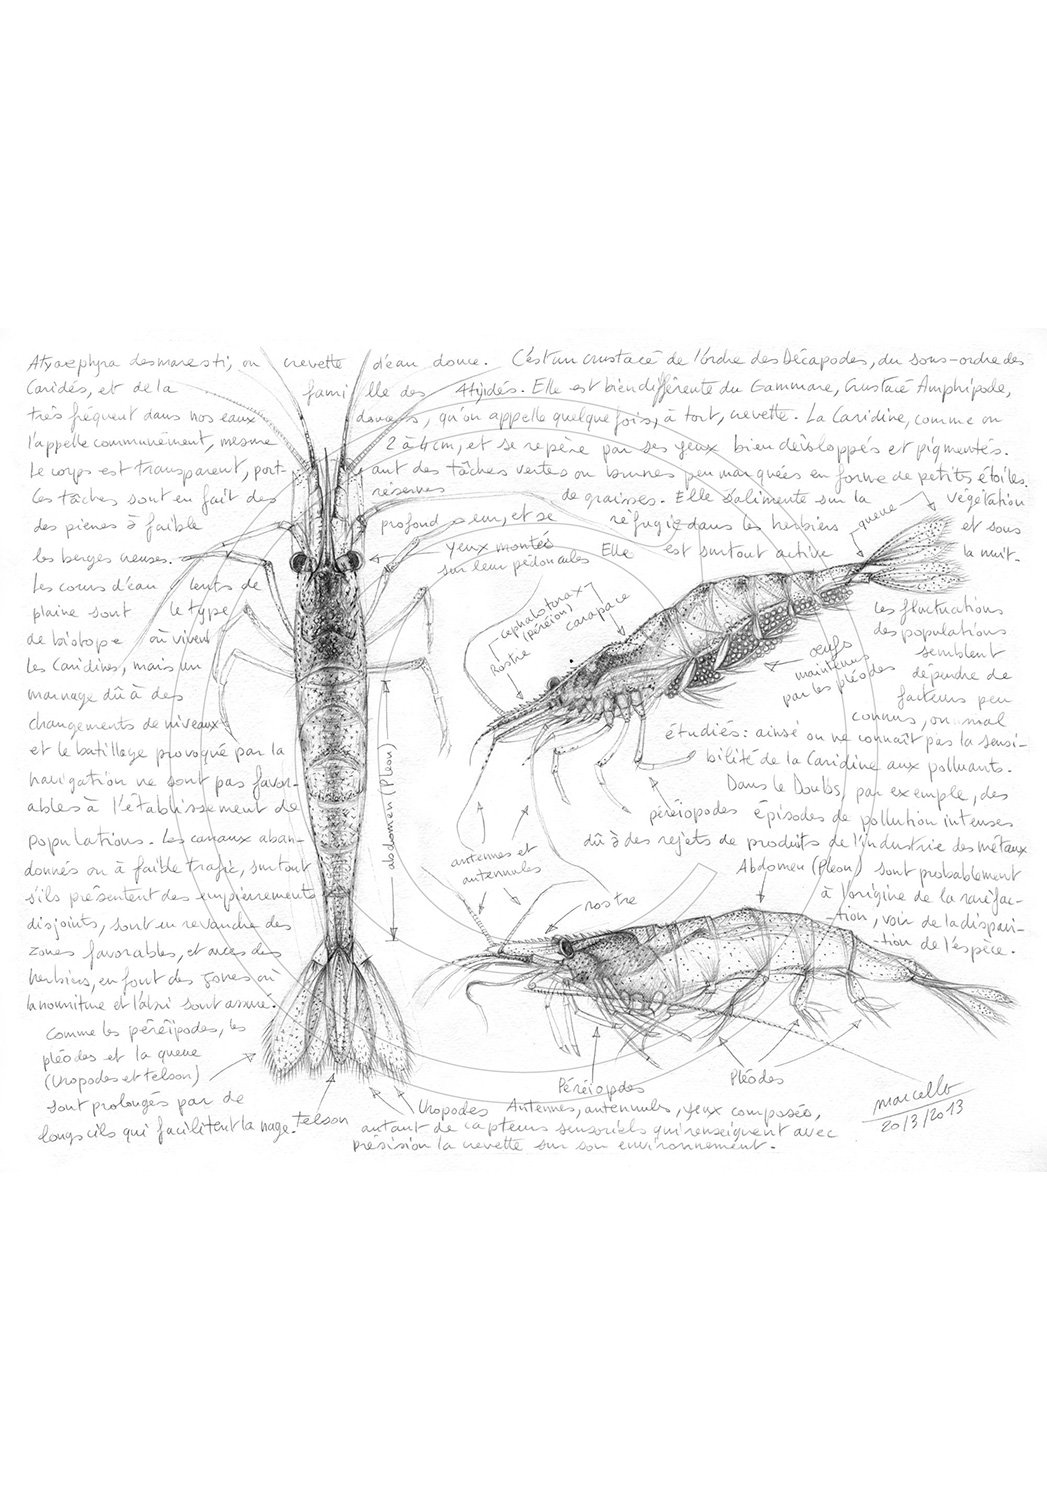 Marcello-art: Aquatic fauna 220 - Freshwater shrimp